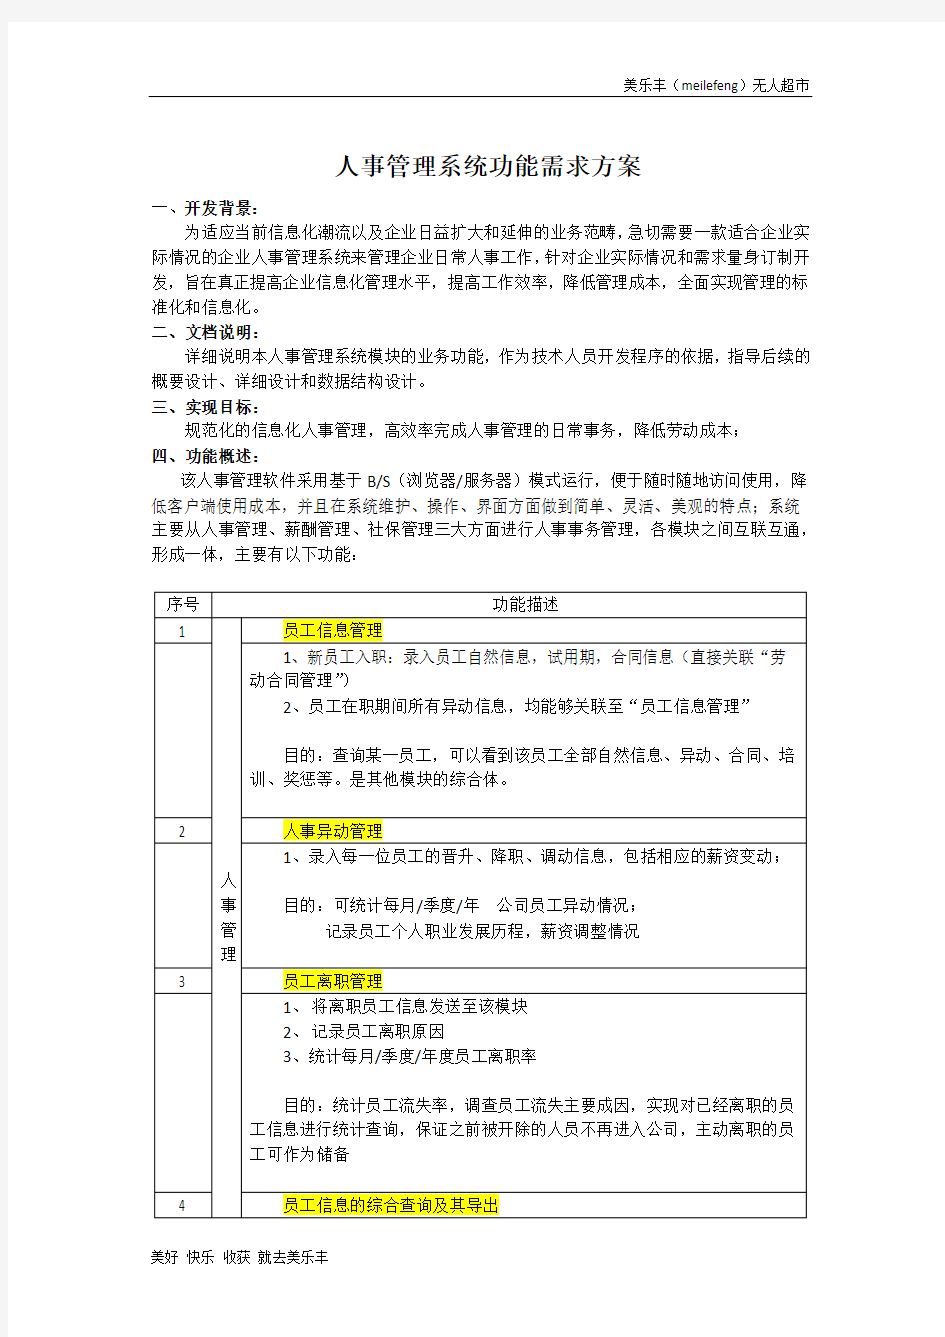 杭州无人超市人事管理系统功能需求方案